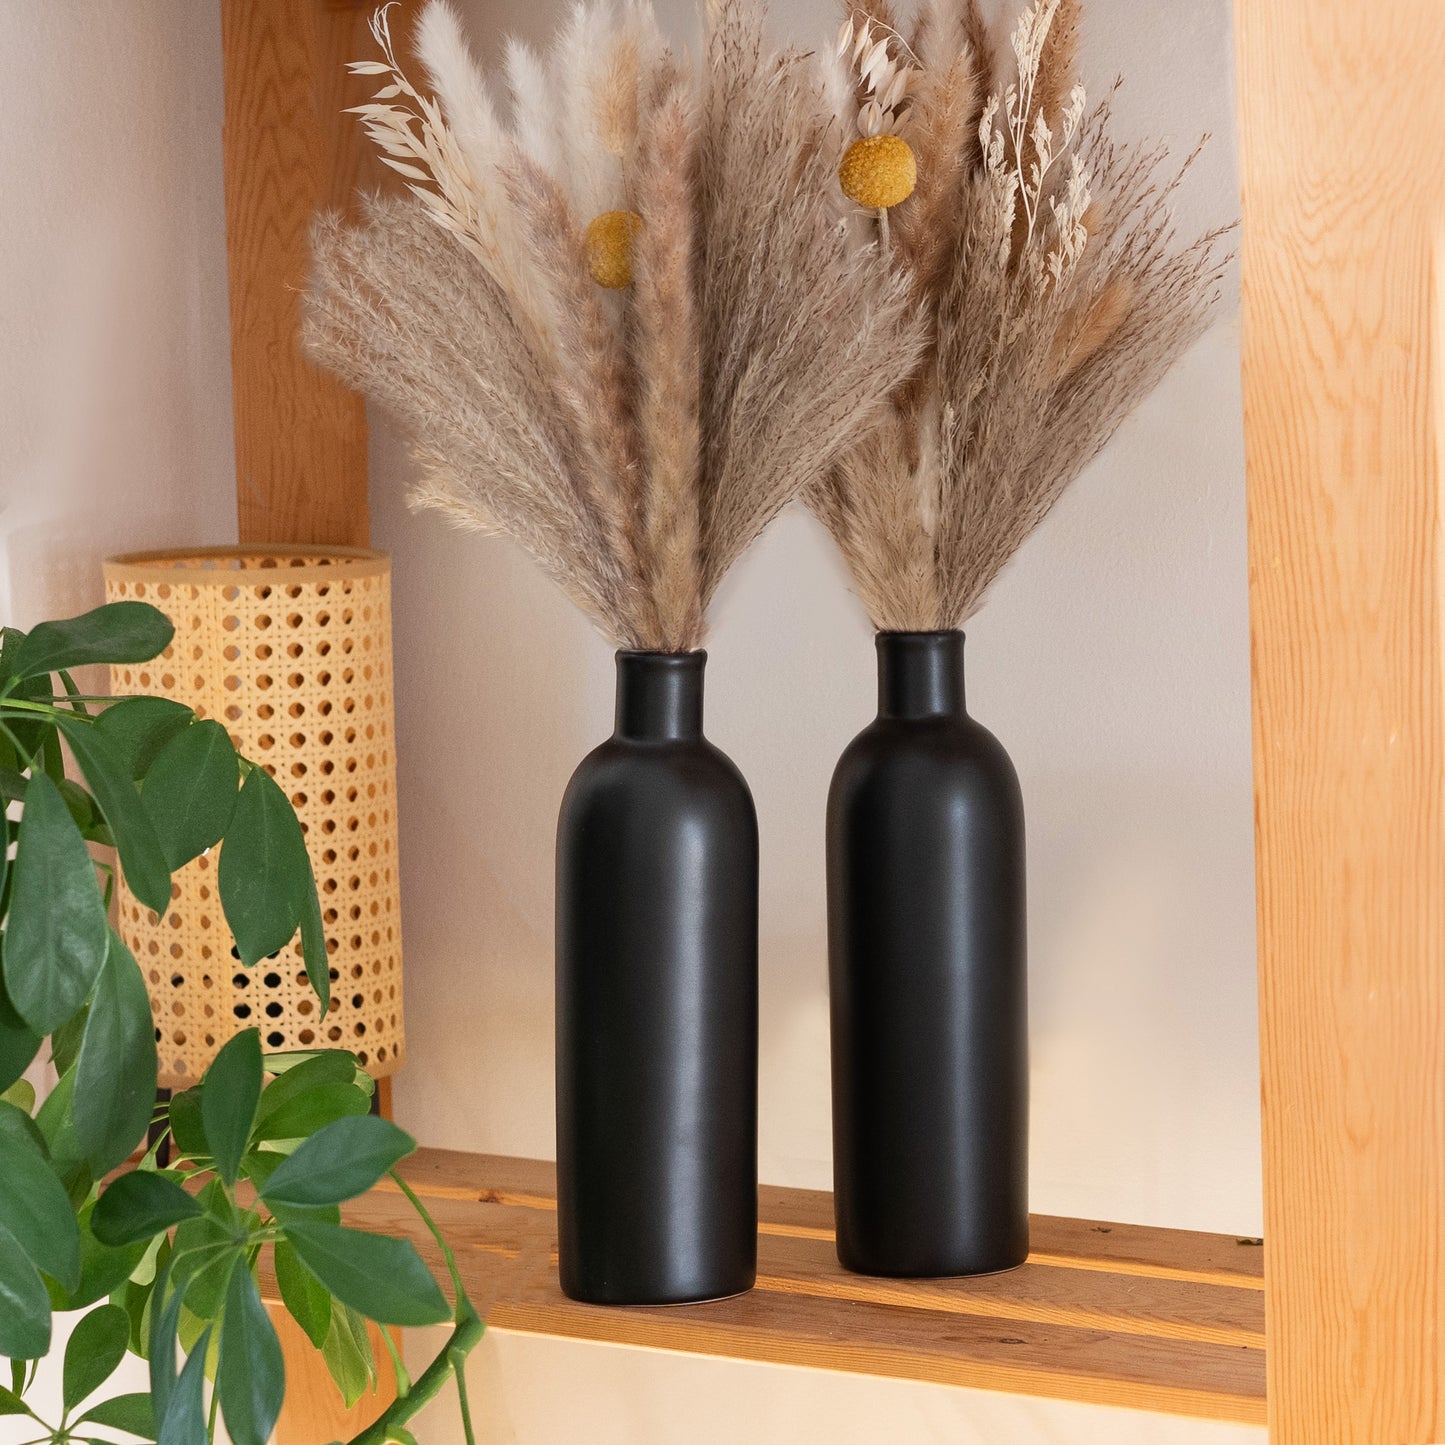 Soome Nattblom - Ceramic Vases Set + Dried Flowers